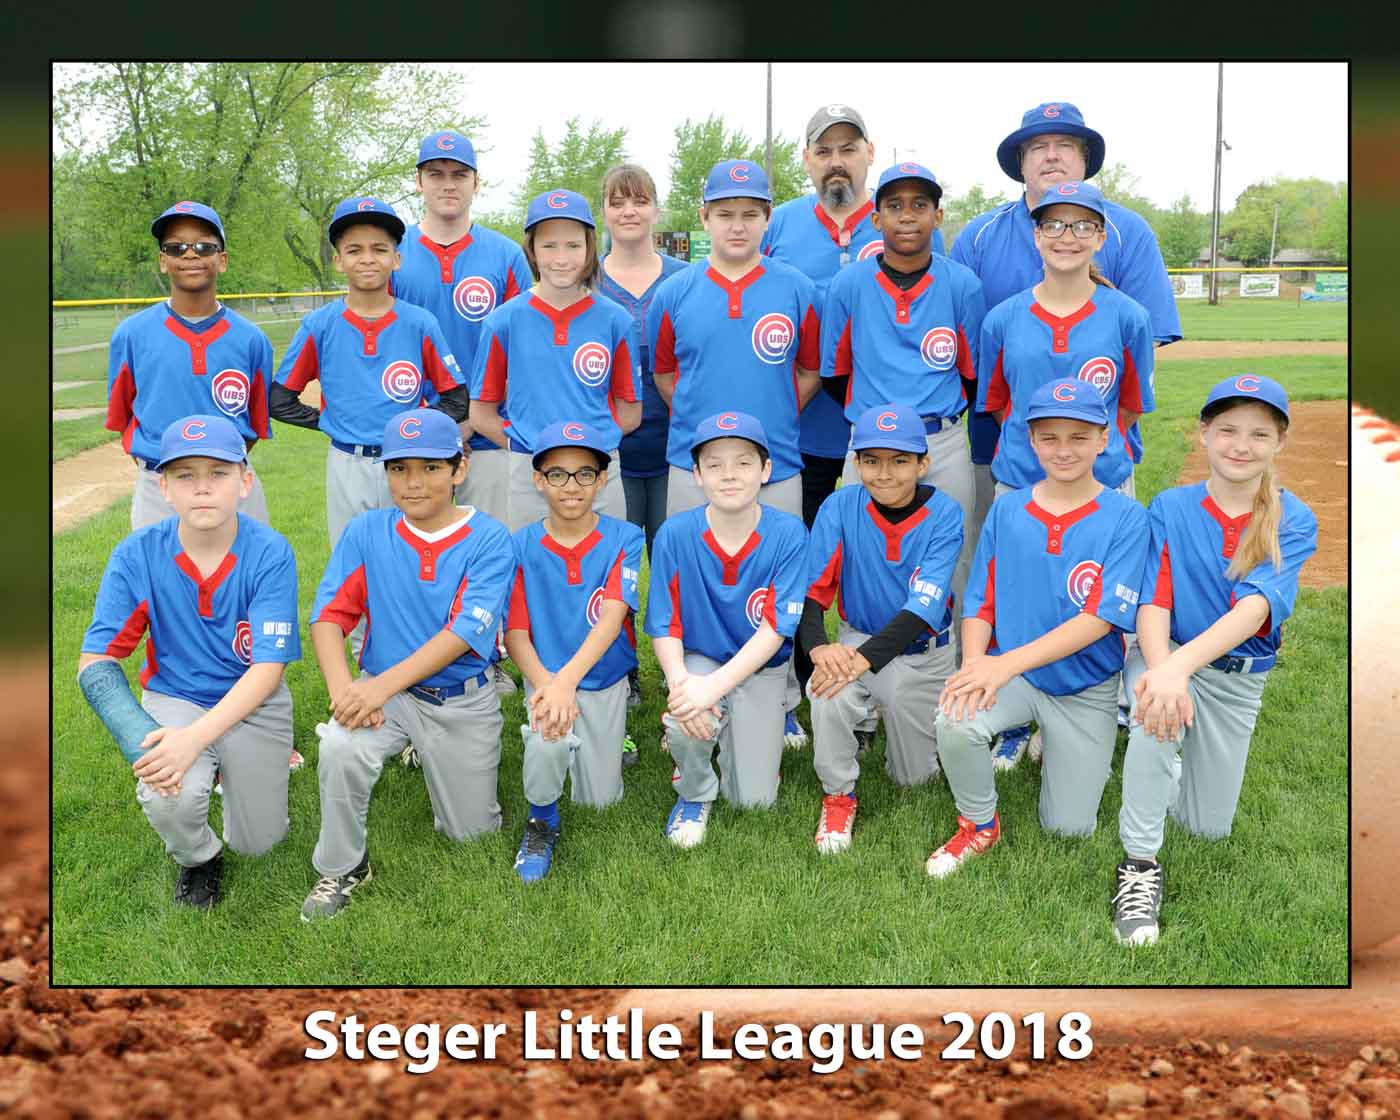 Steger Little league group in blue uniforms pose